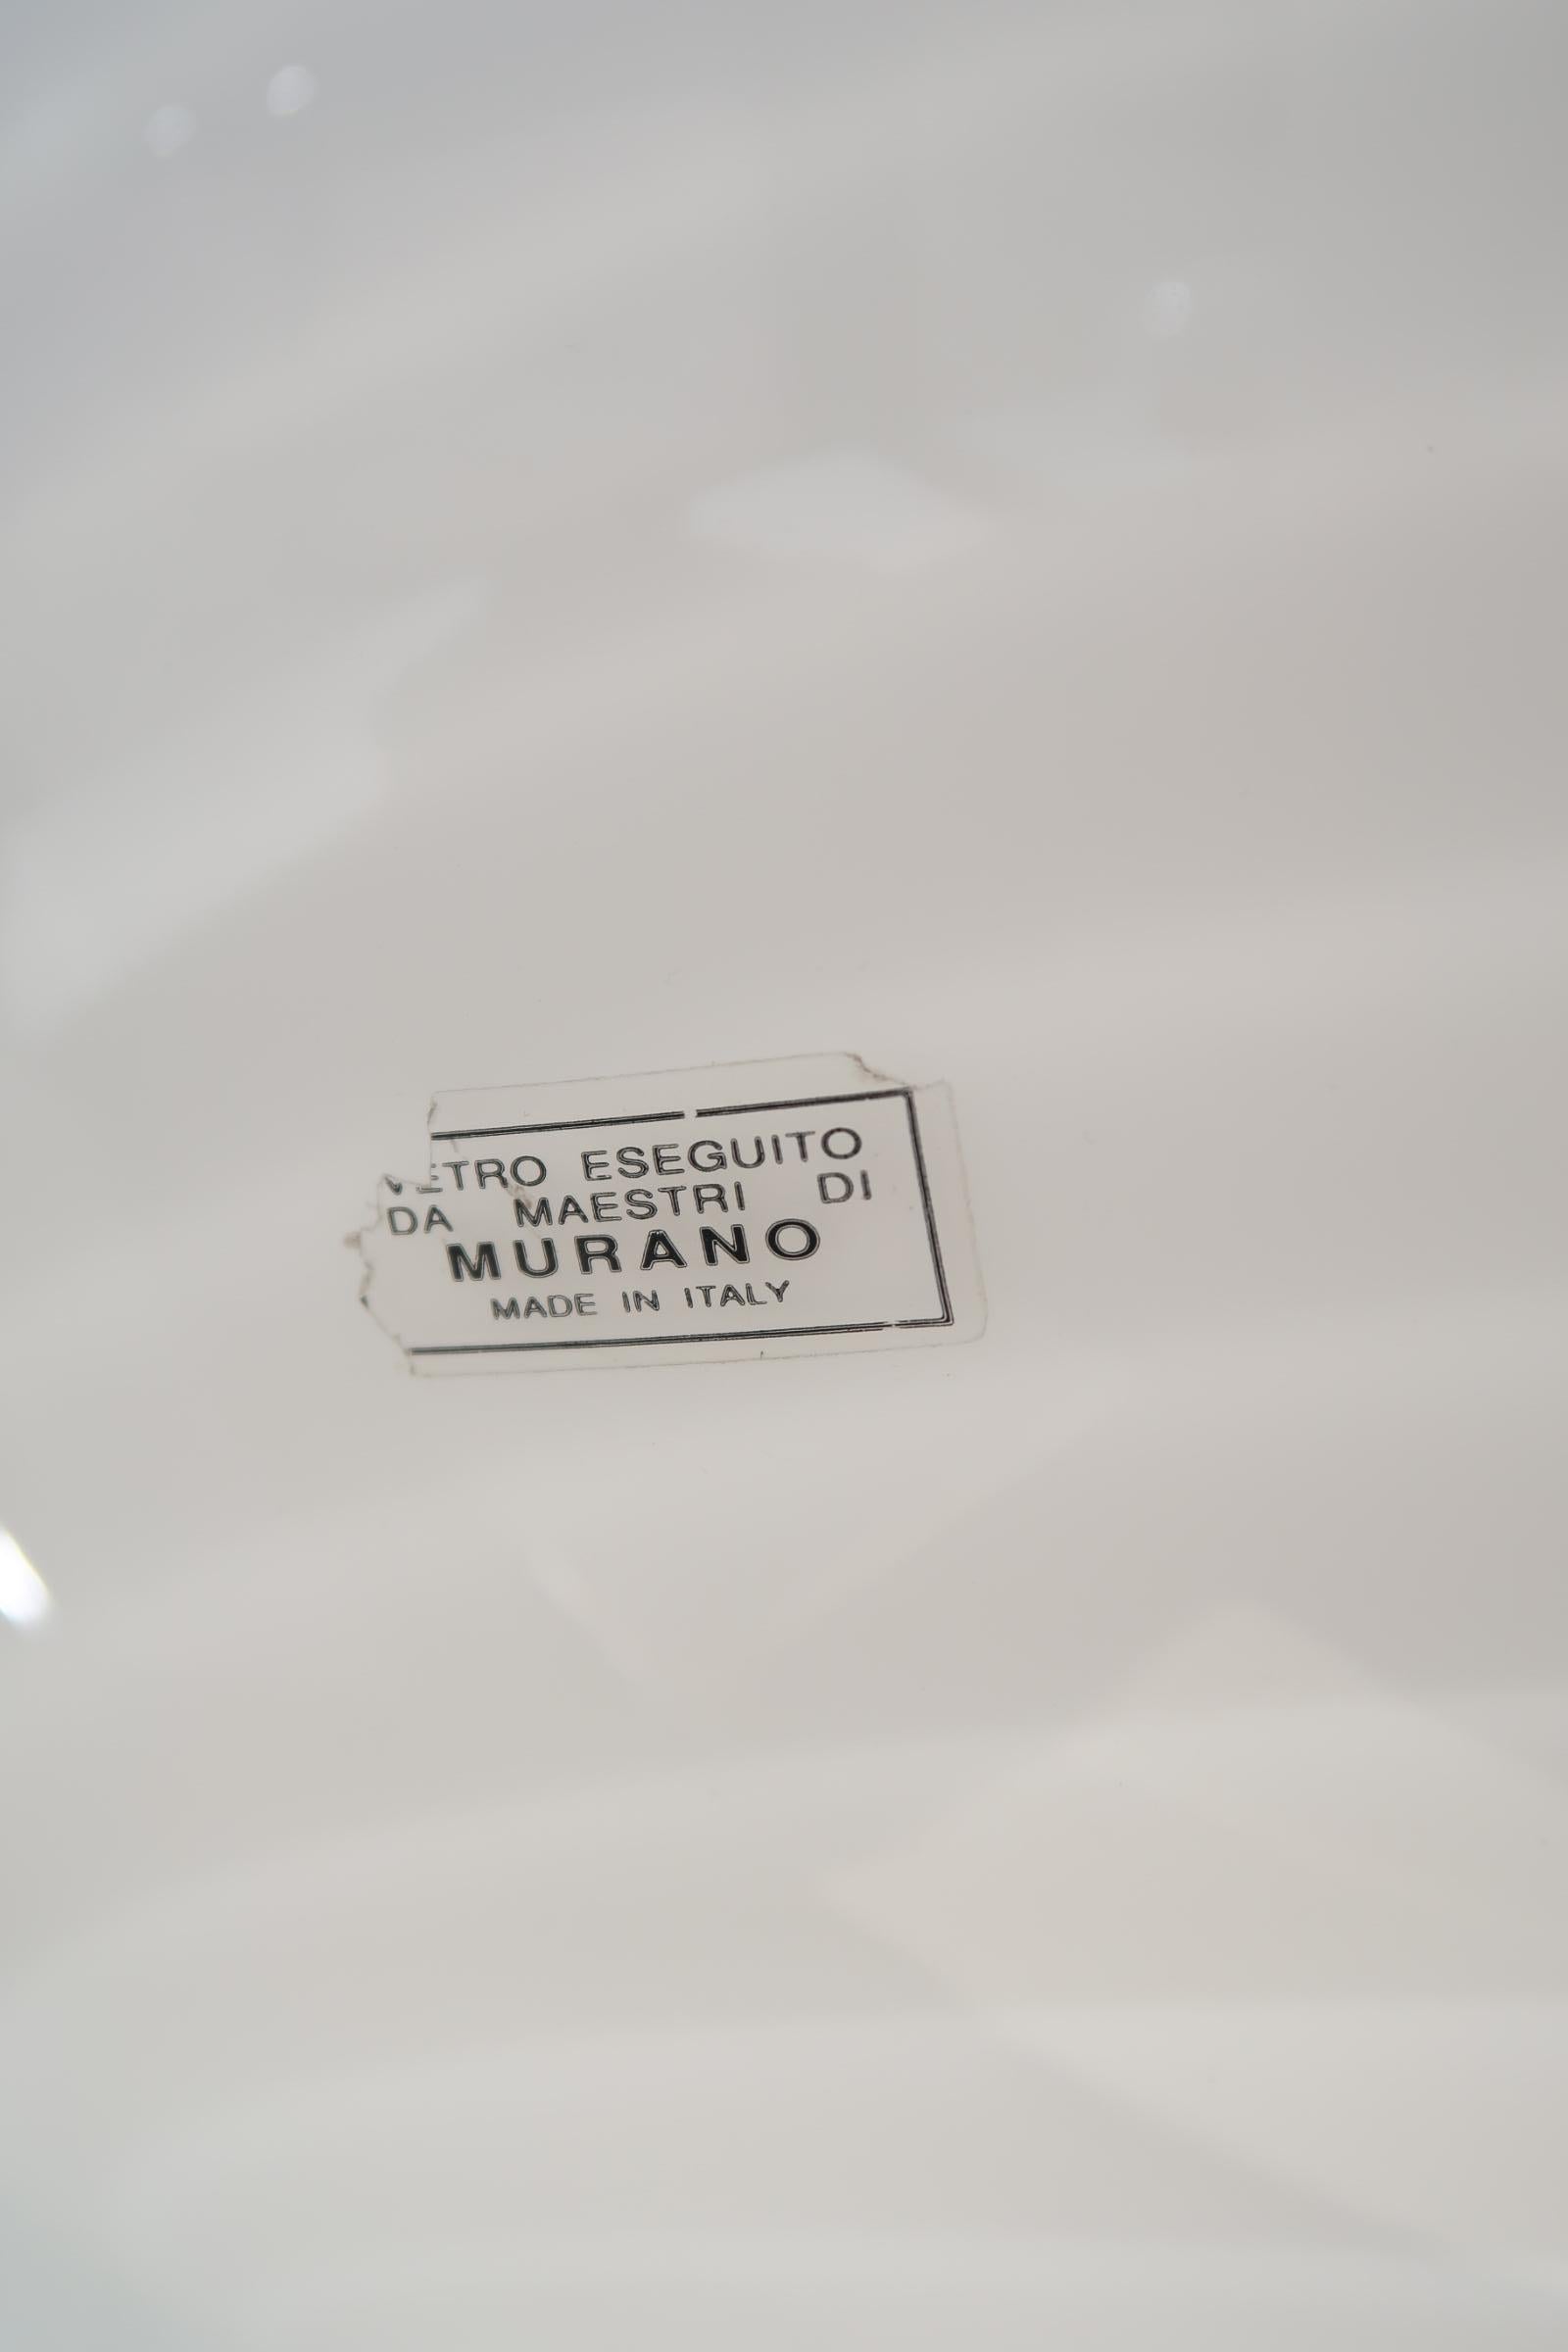 Murano Glass Vintage Murano Pendant Ceiling Lamp White Swirl Glass Original 70s Italian